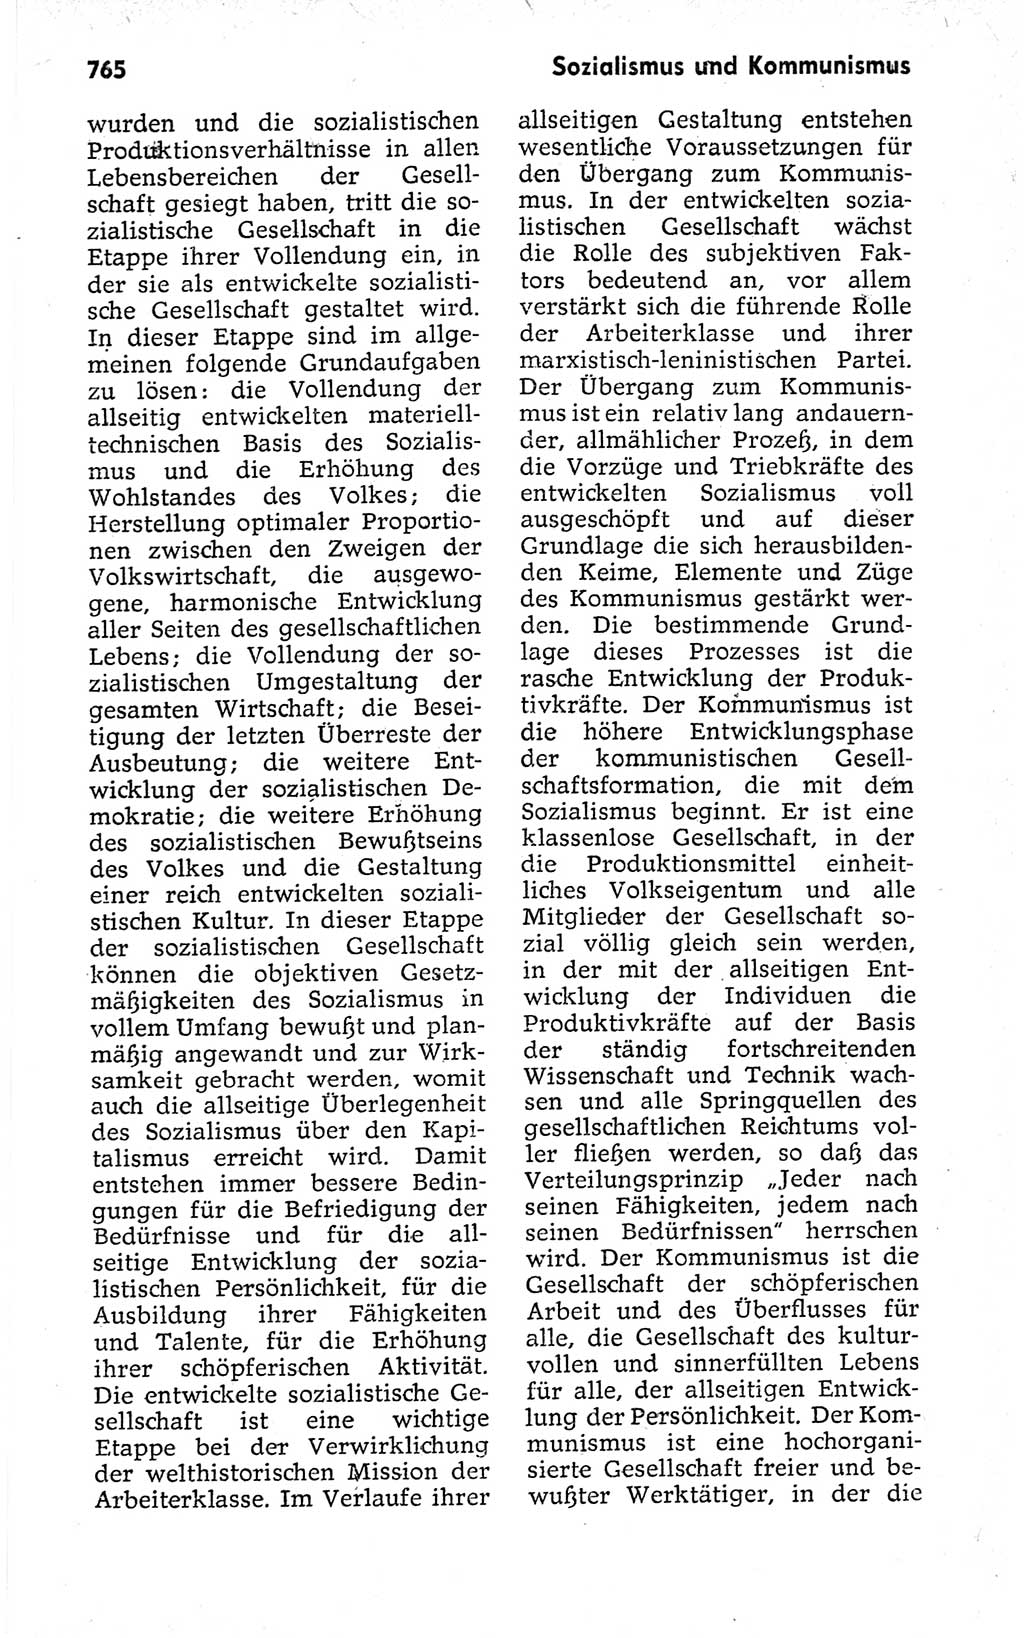 Kleines politisches Wörterbuch [Deutsche Demokratische Republik (DDR)] 1973, Seite 765 (Kl. pol. Wb. DDR 1973, S. 765)